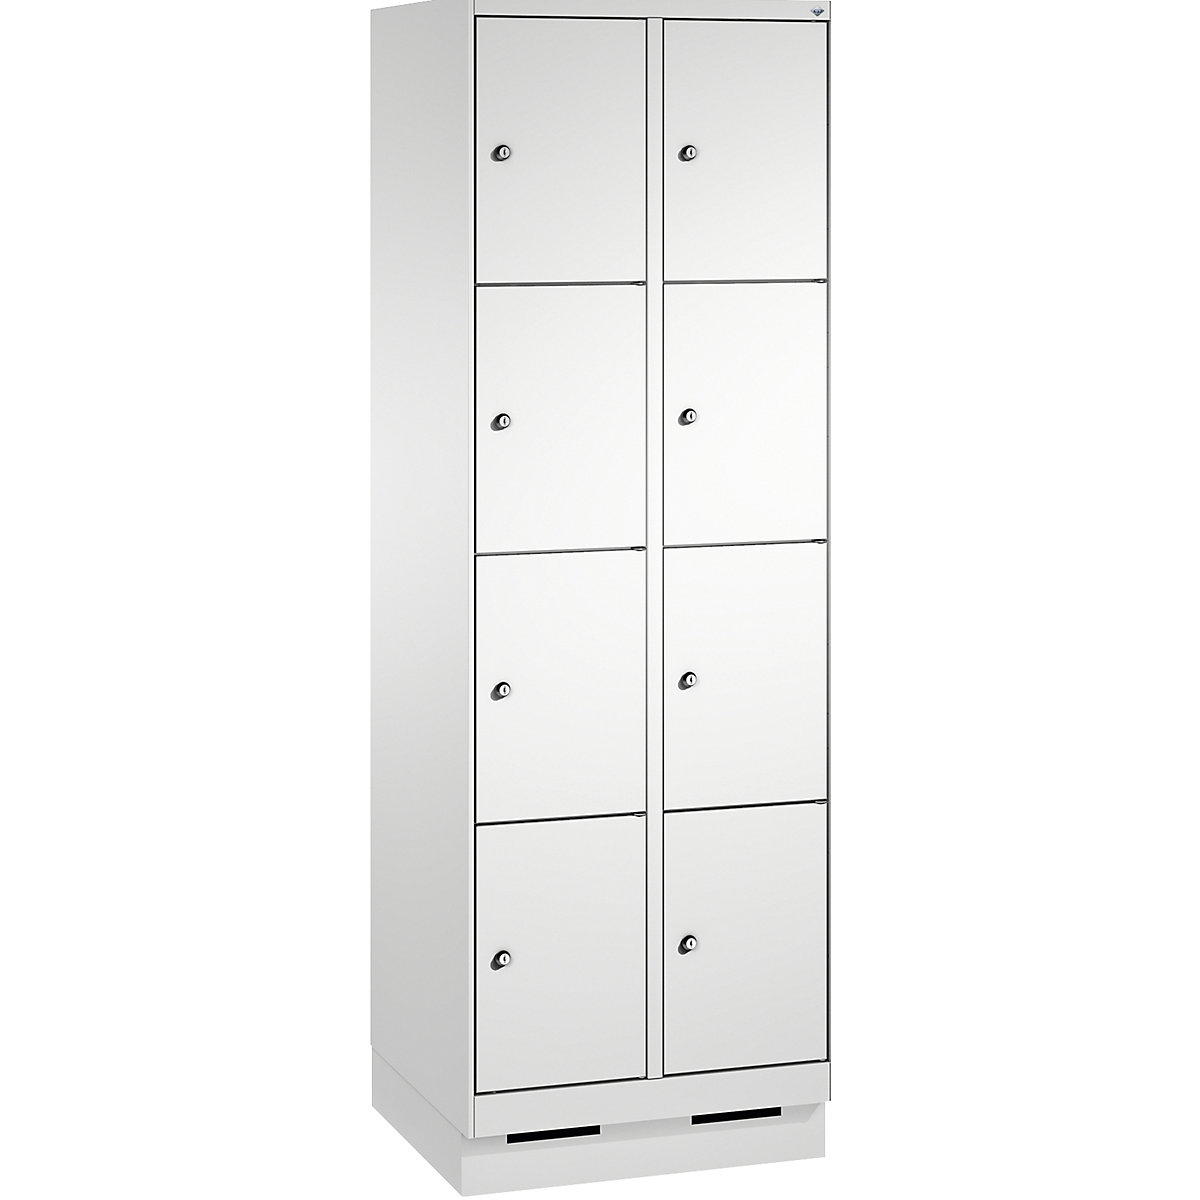 Armoire à casiers sur socle EVOLO – C+P, 2 compartiments, 4 casiers chacun, largeur compartiments 300 mm, gris clair / gris clair-11